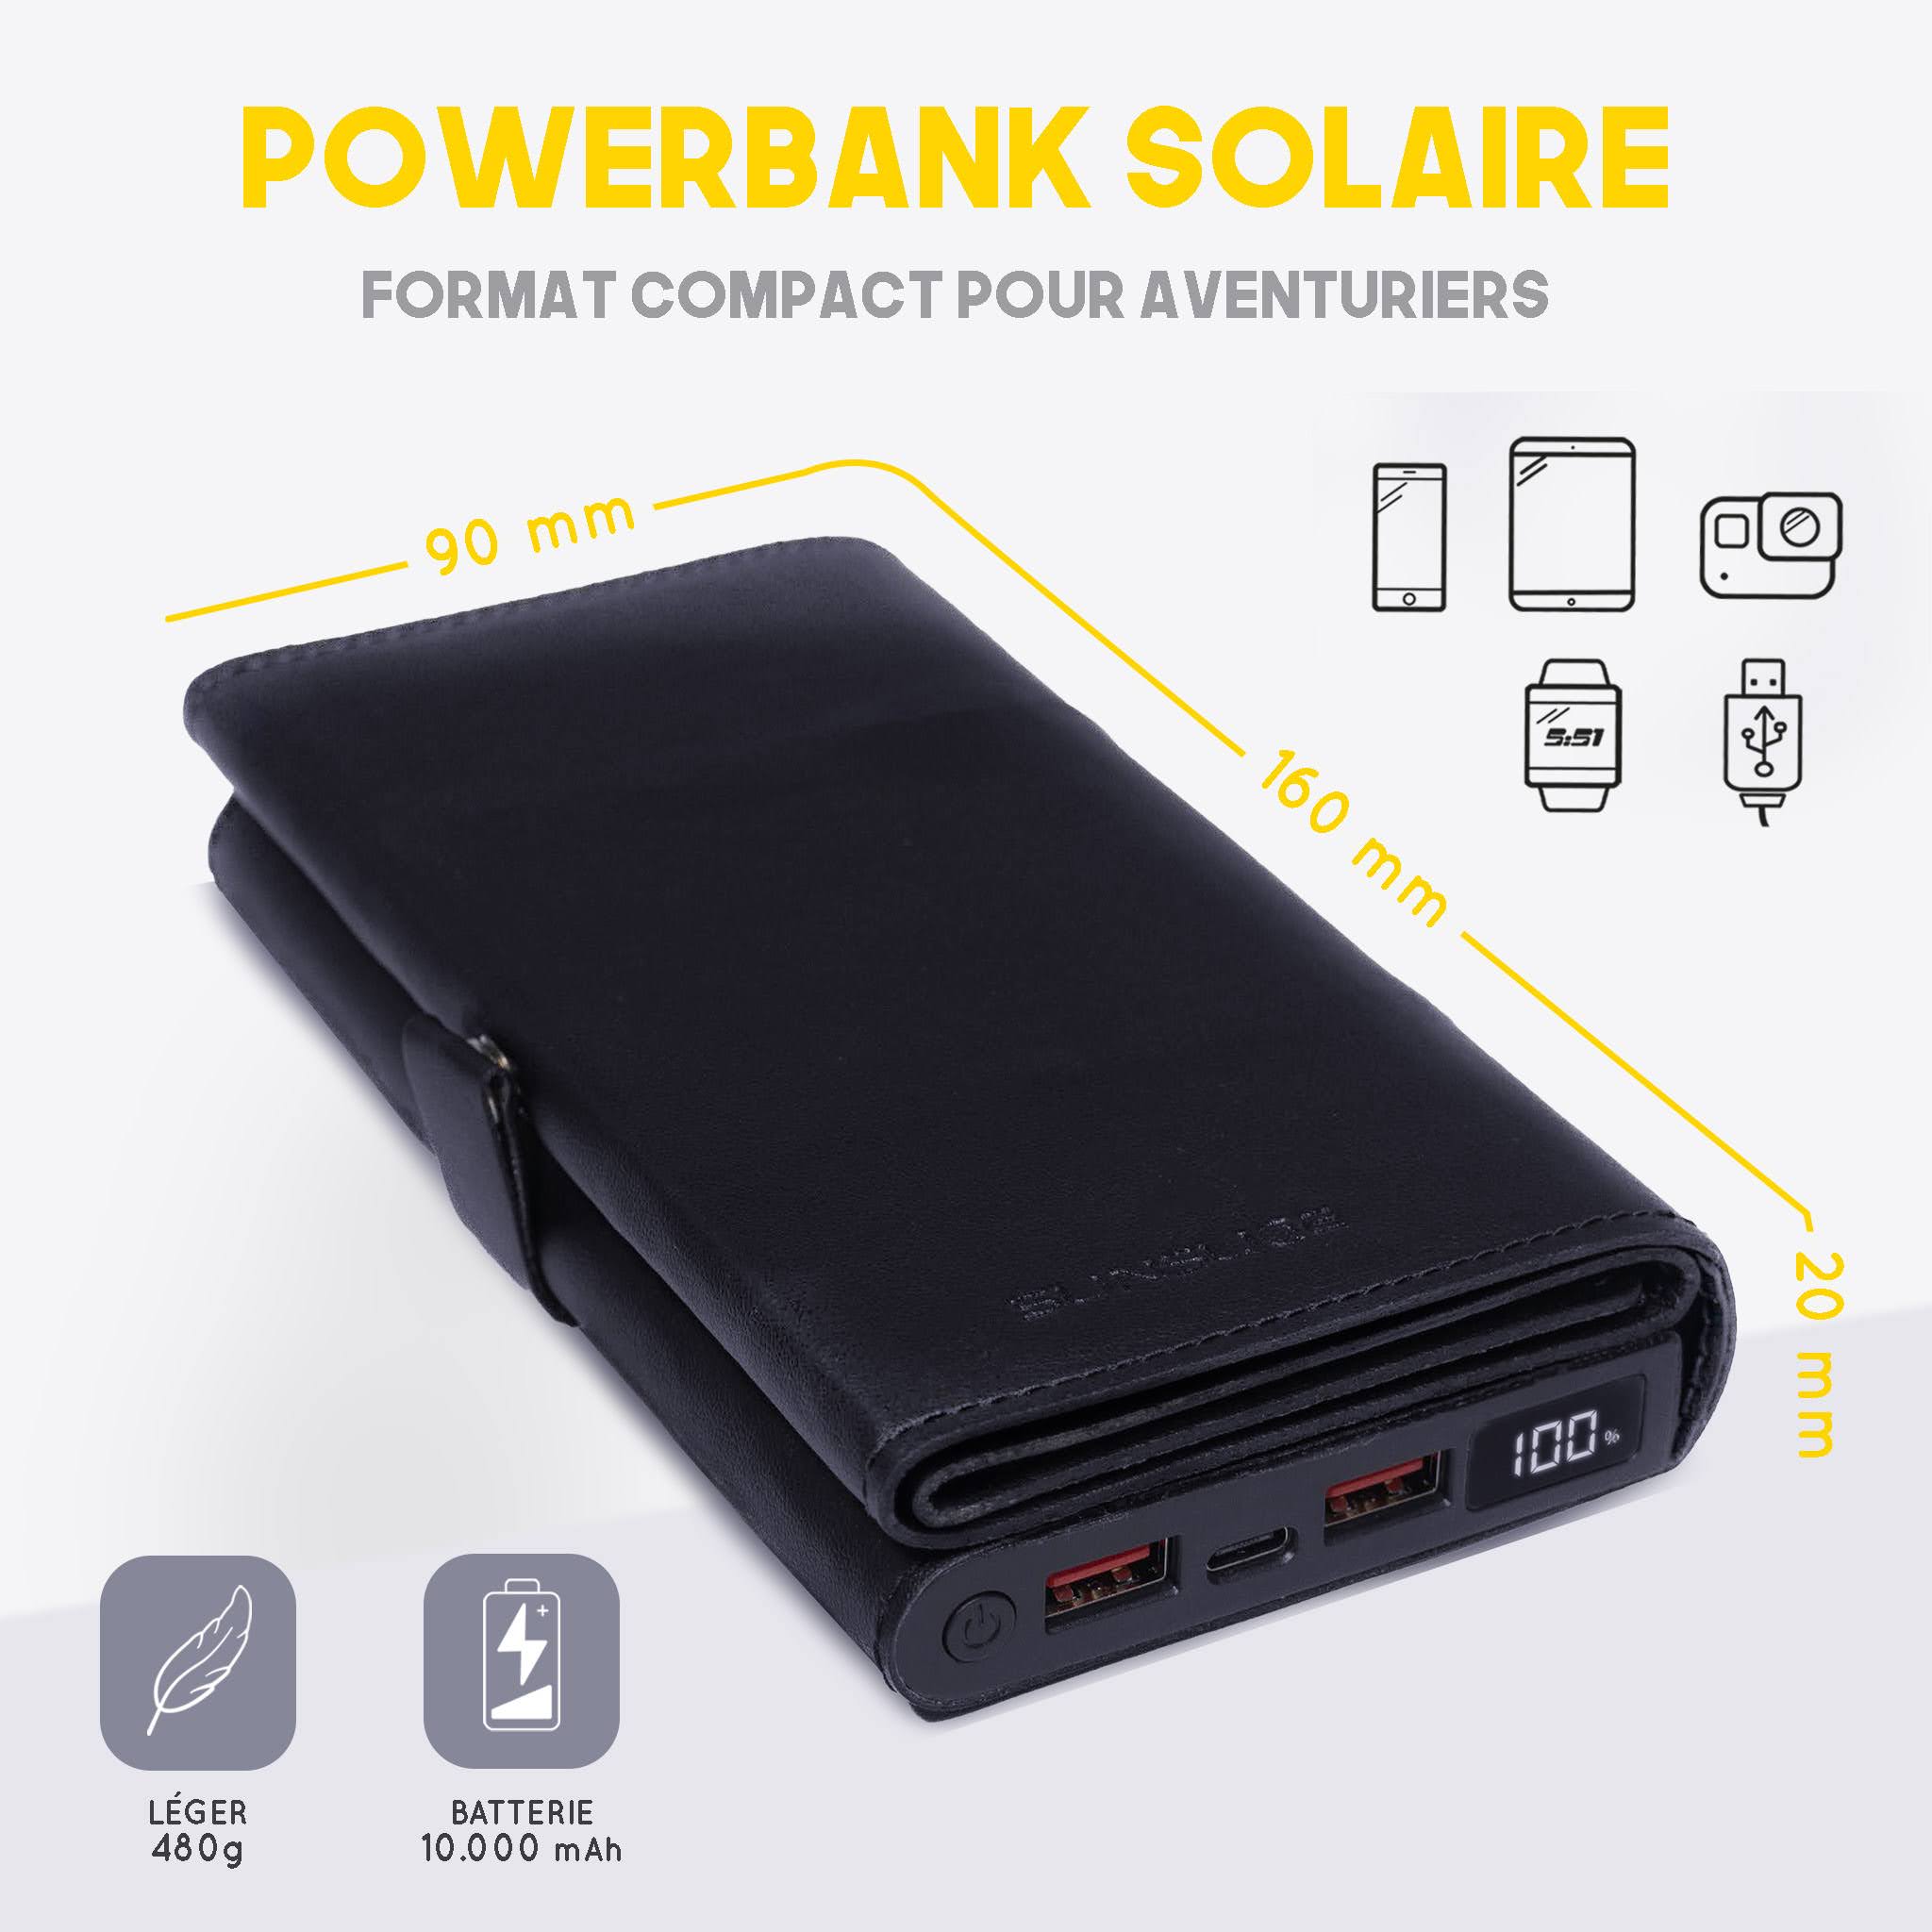 La nouvelle batterie solaire portable de la marque Sunslice avec une batterie externe 10000mAh et un écran LCD intégrés